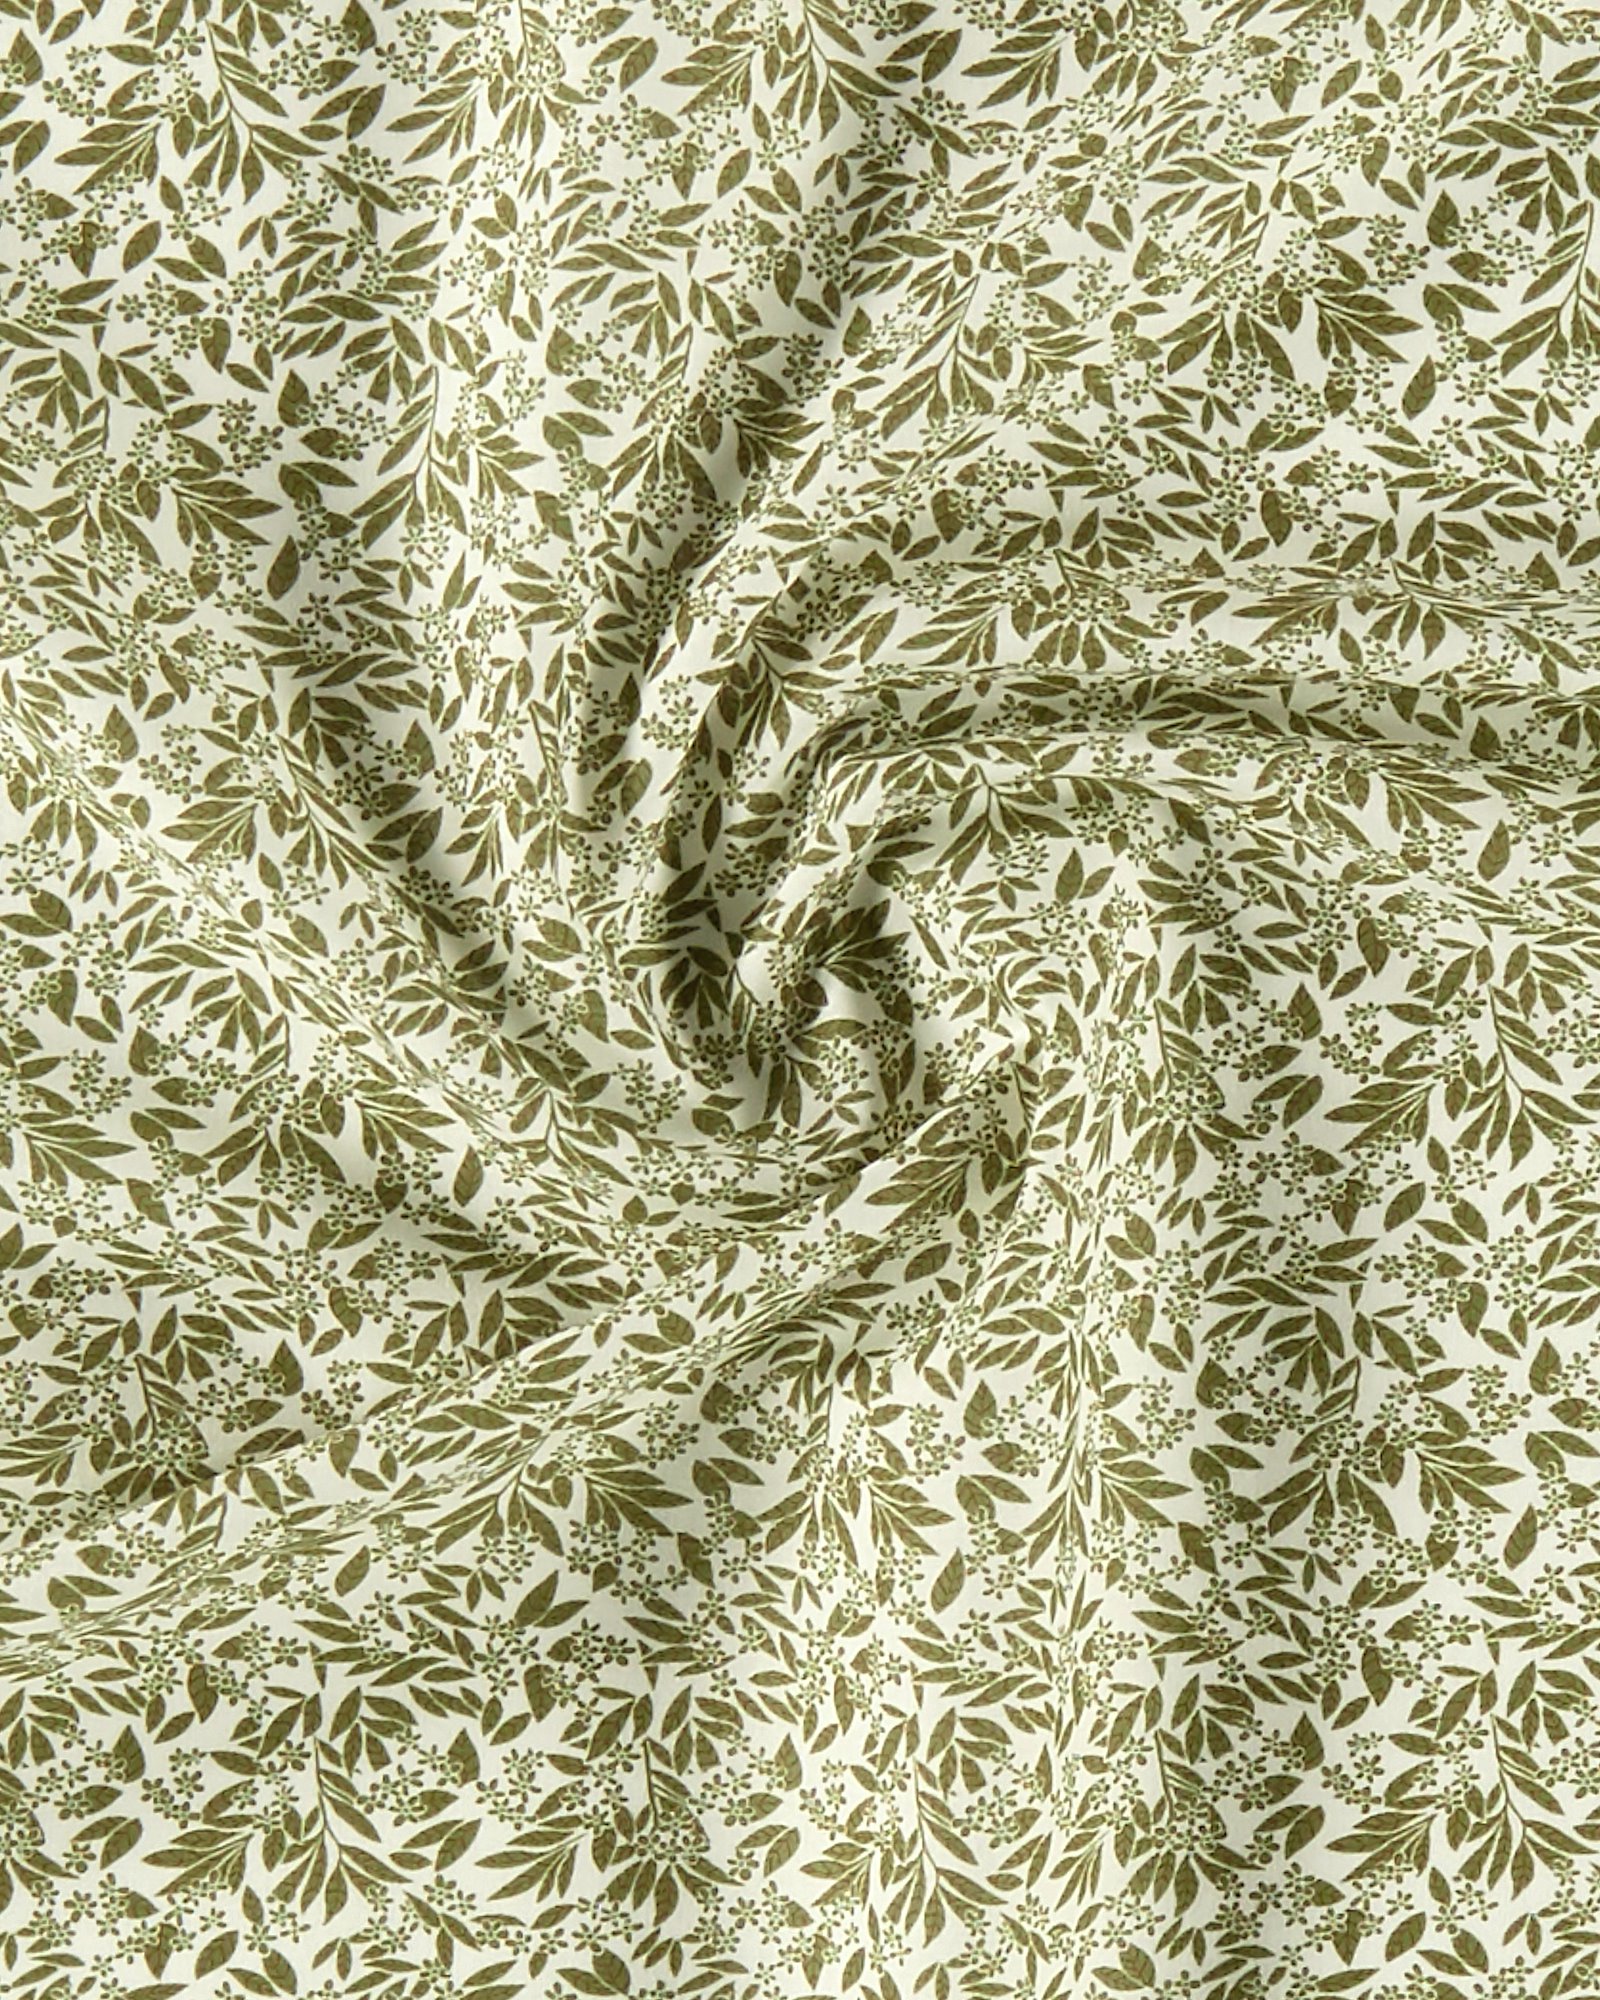 Cotton olive green leaf pattern 852480_pack